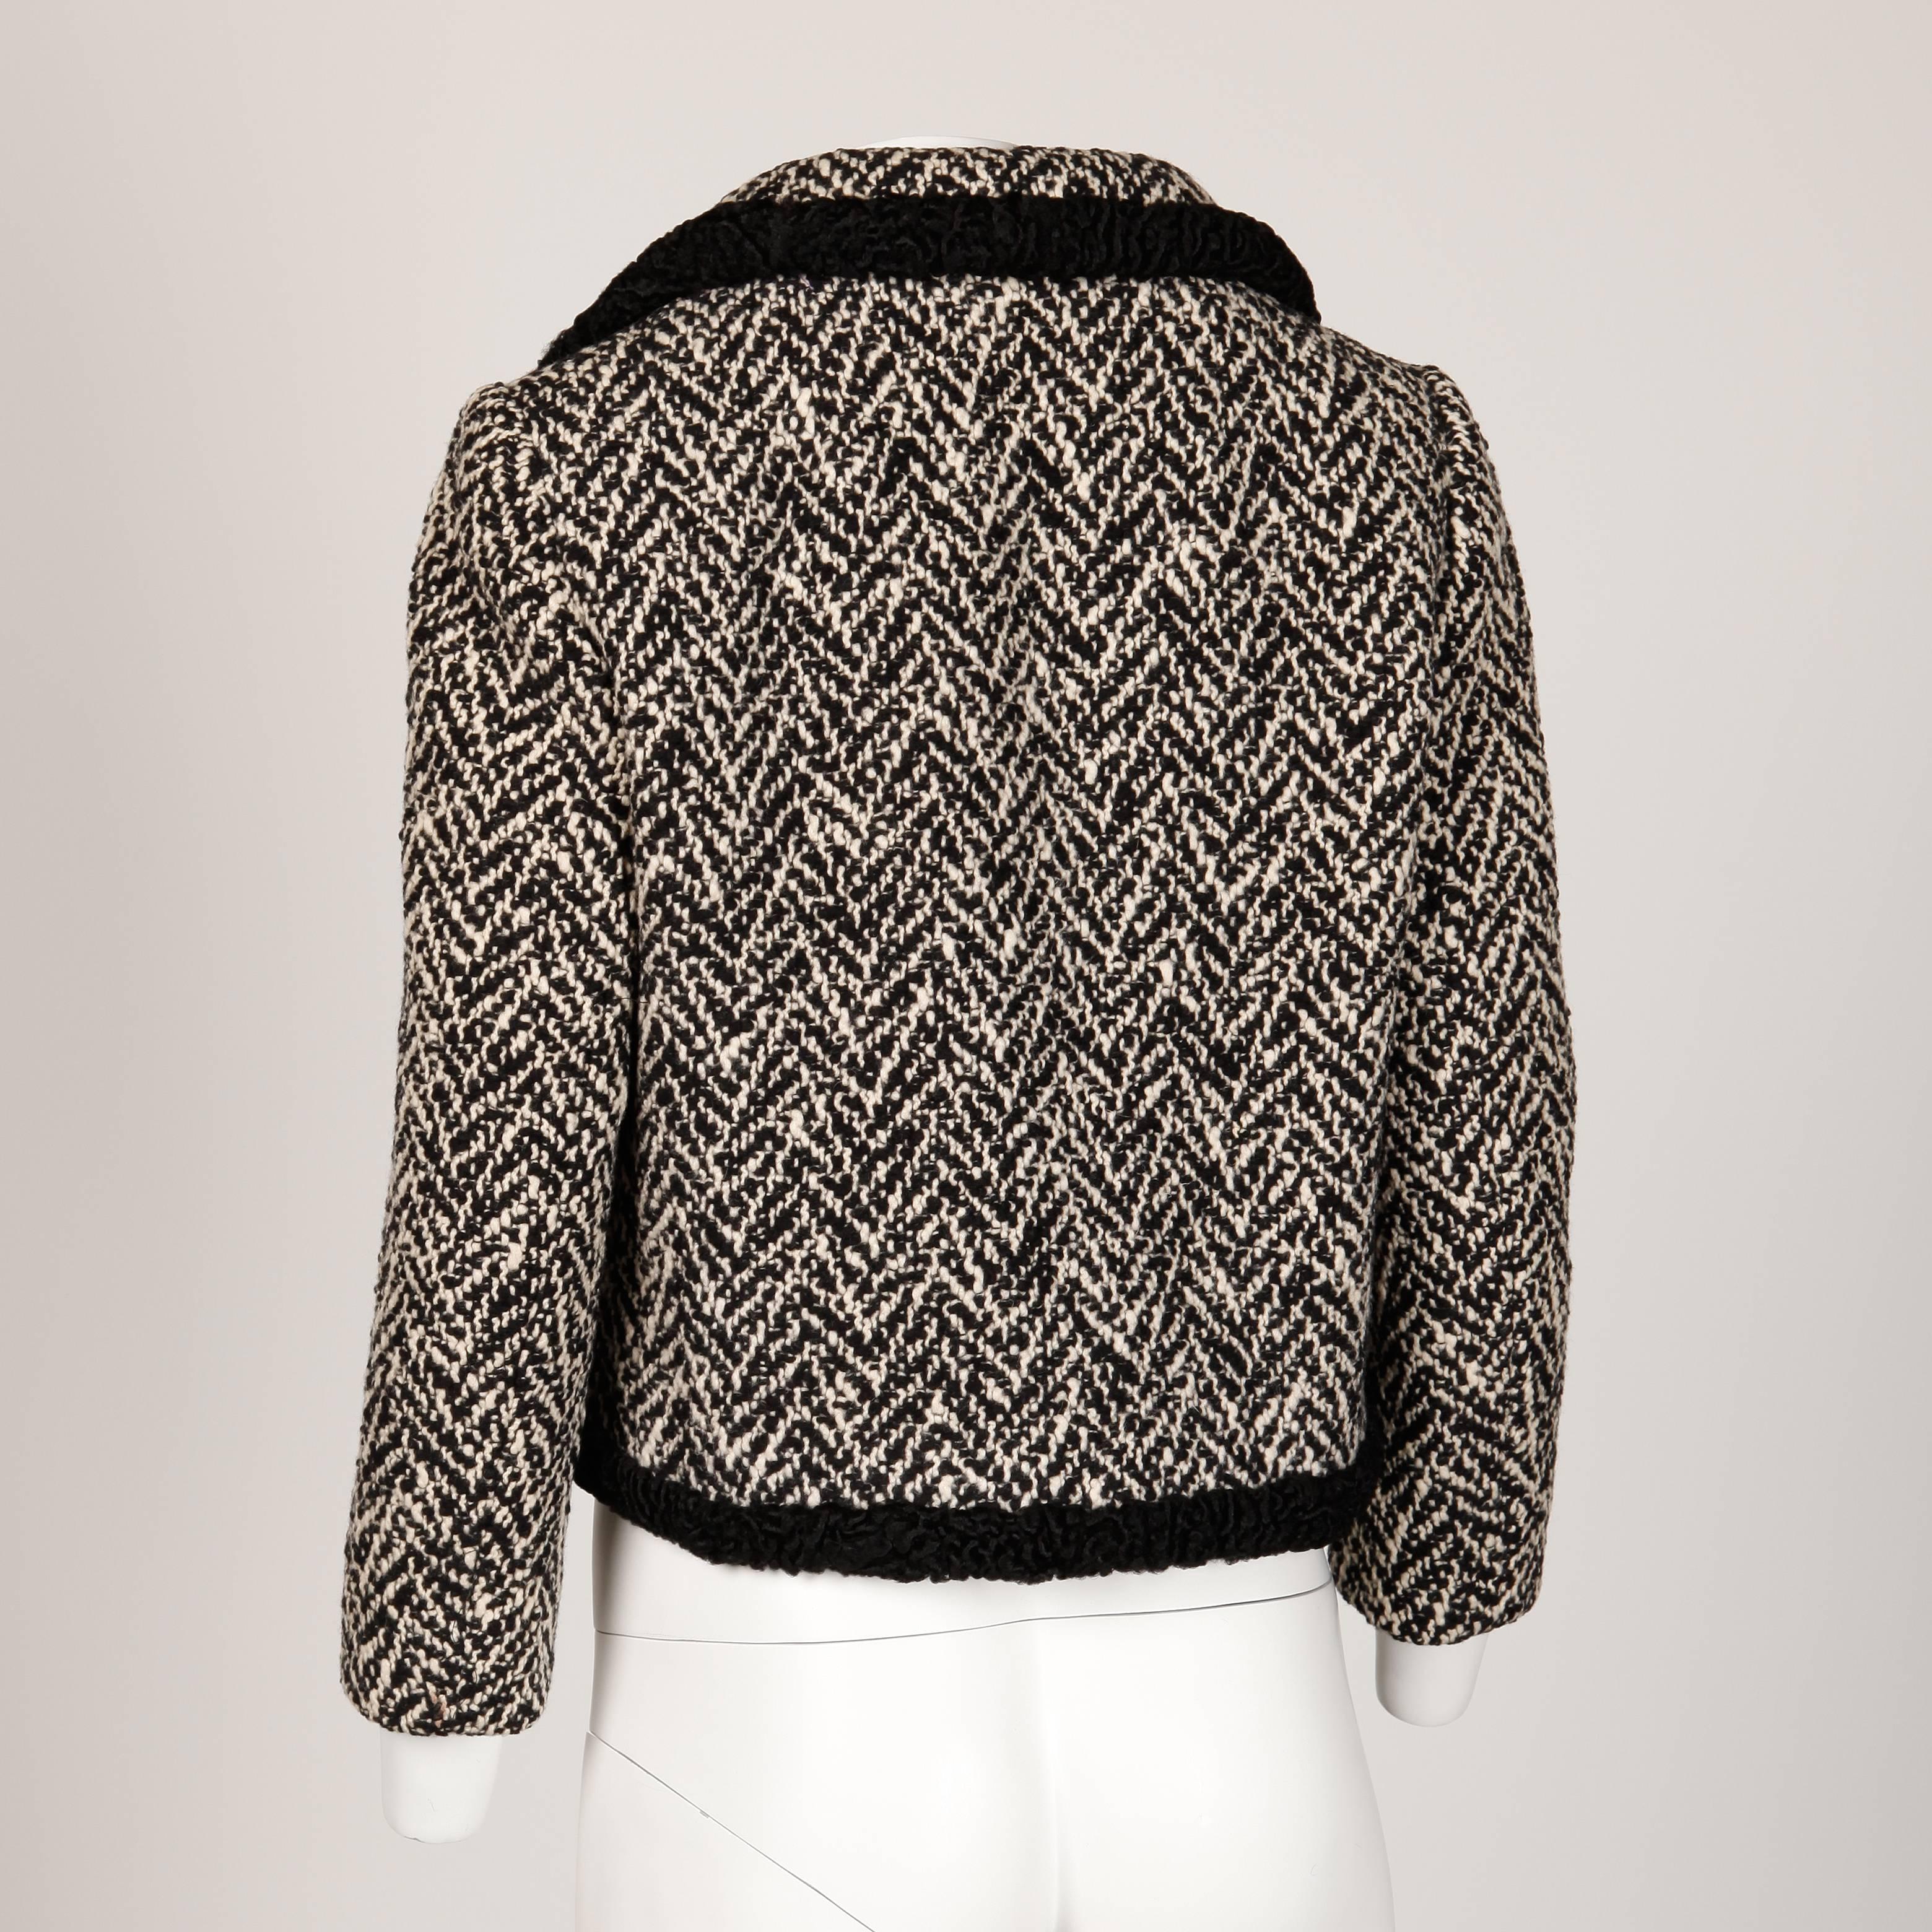 Women's Ben Zuckerman 1960s Vintage Wool Tweed Jacket with Persian Lamb Fur Trim For Sale